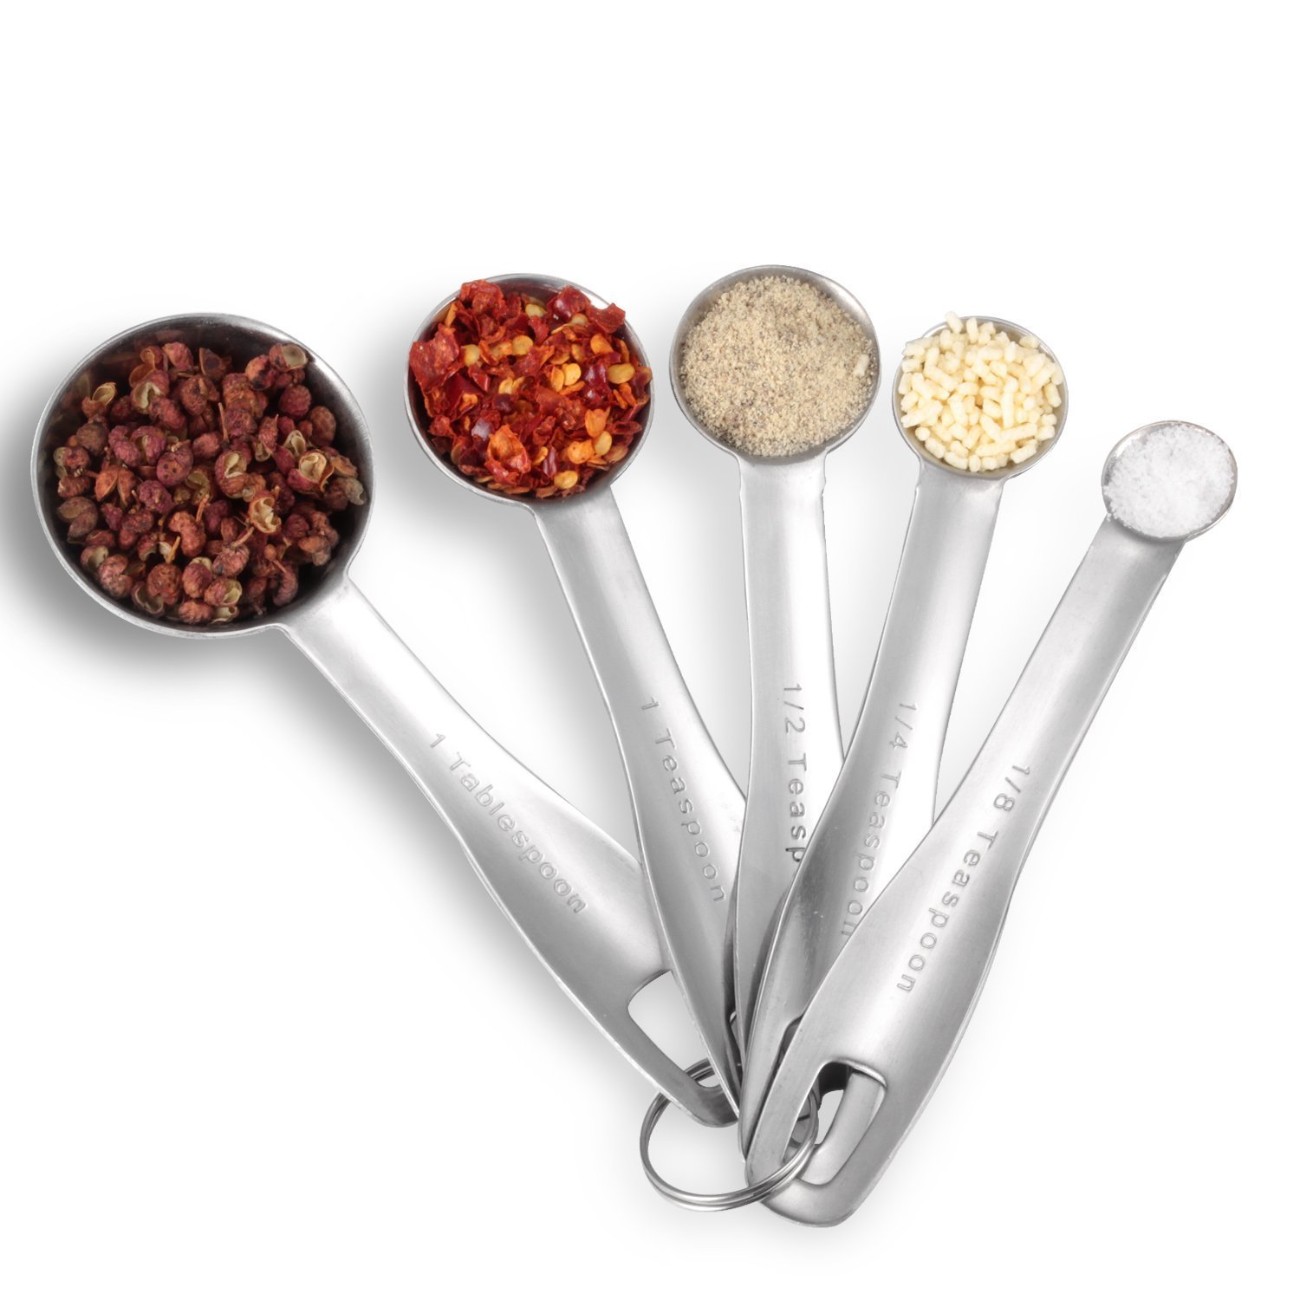 Stainless Steel Long Lasting Measuring Spoons Set